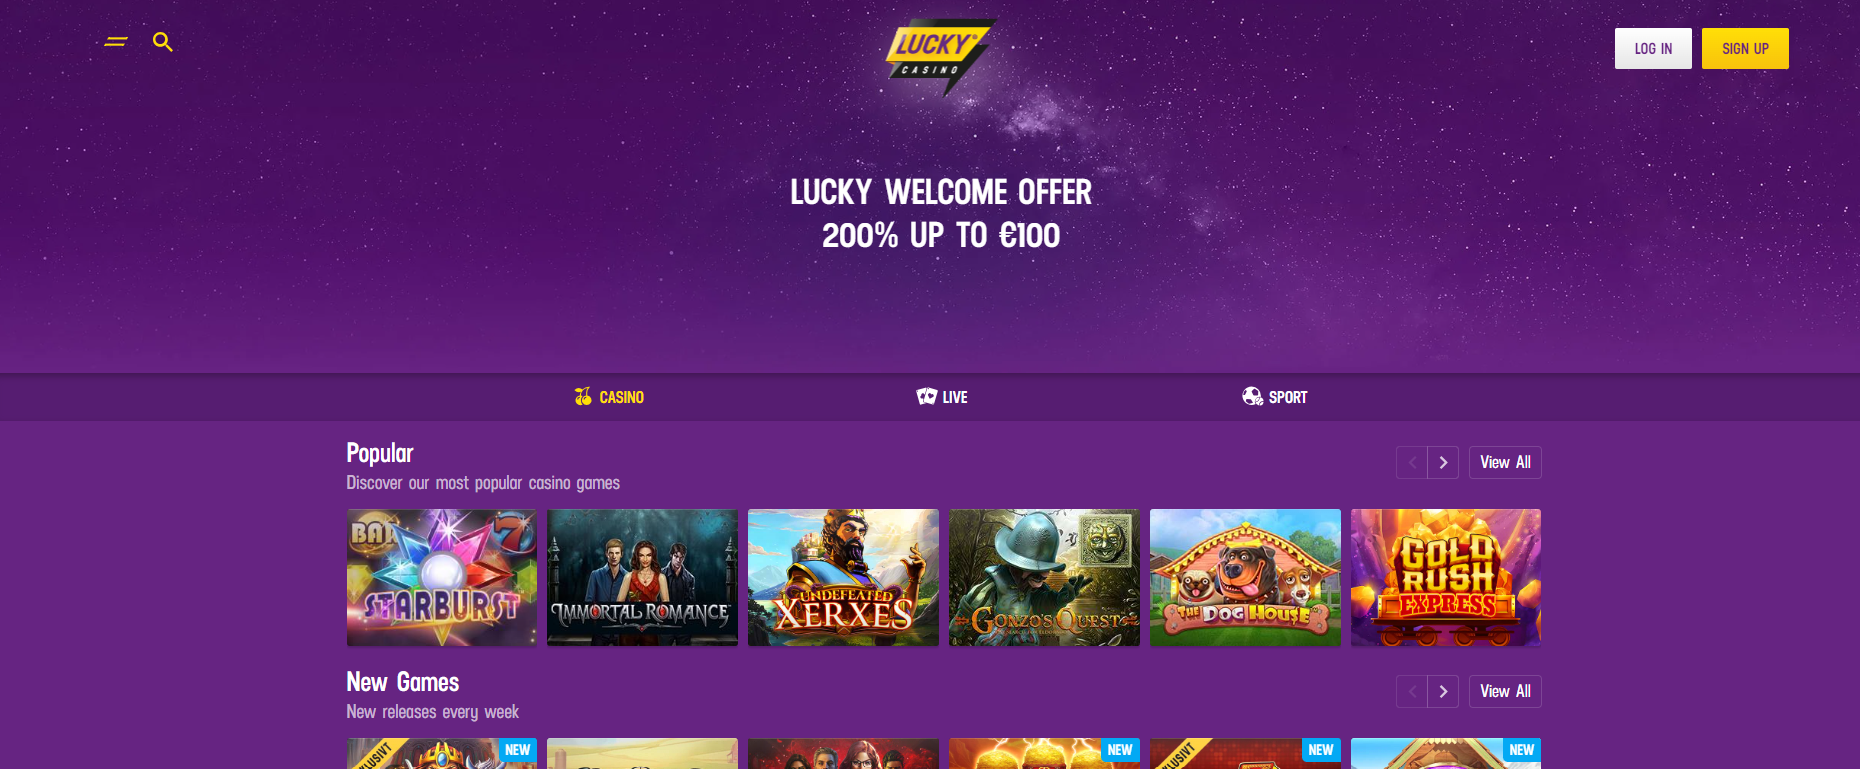 Lucky Casino Homepage